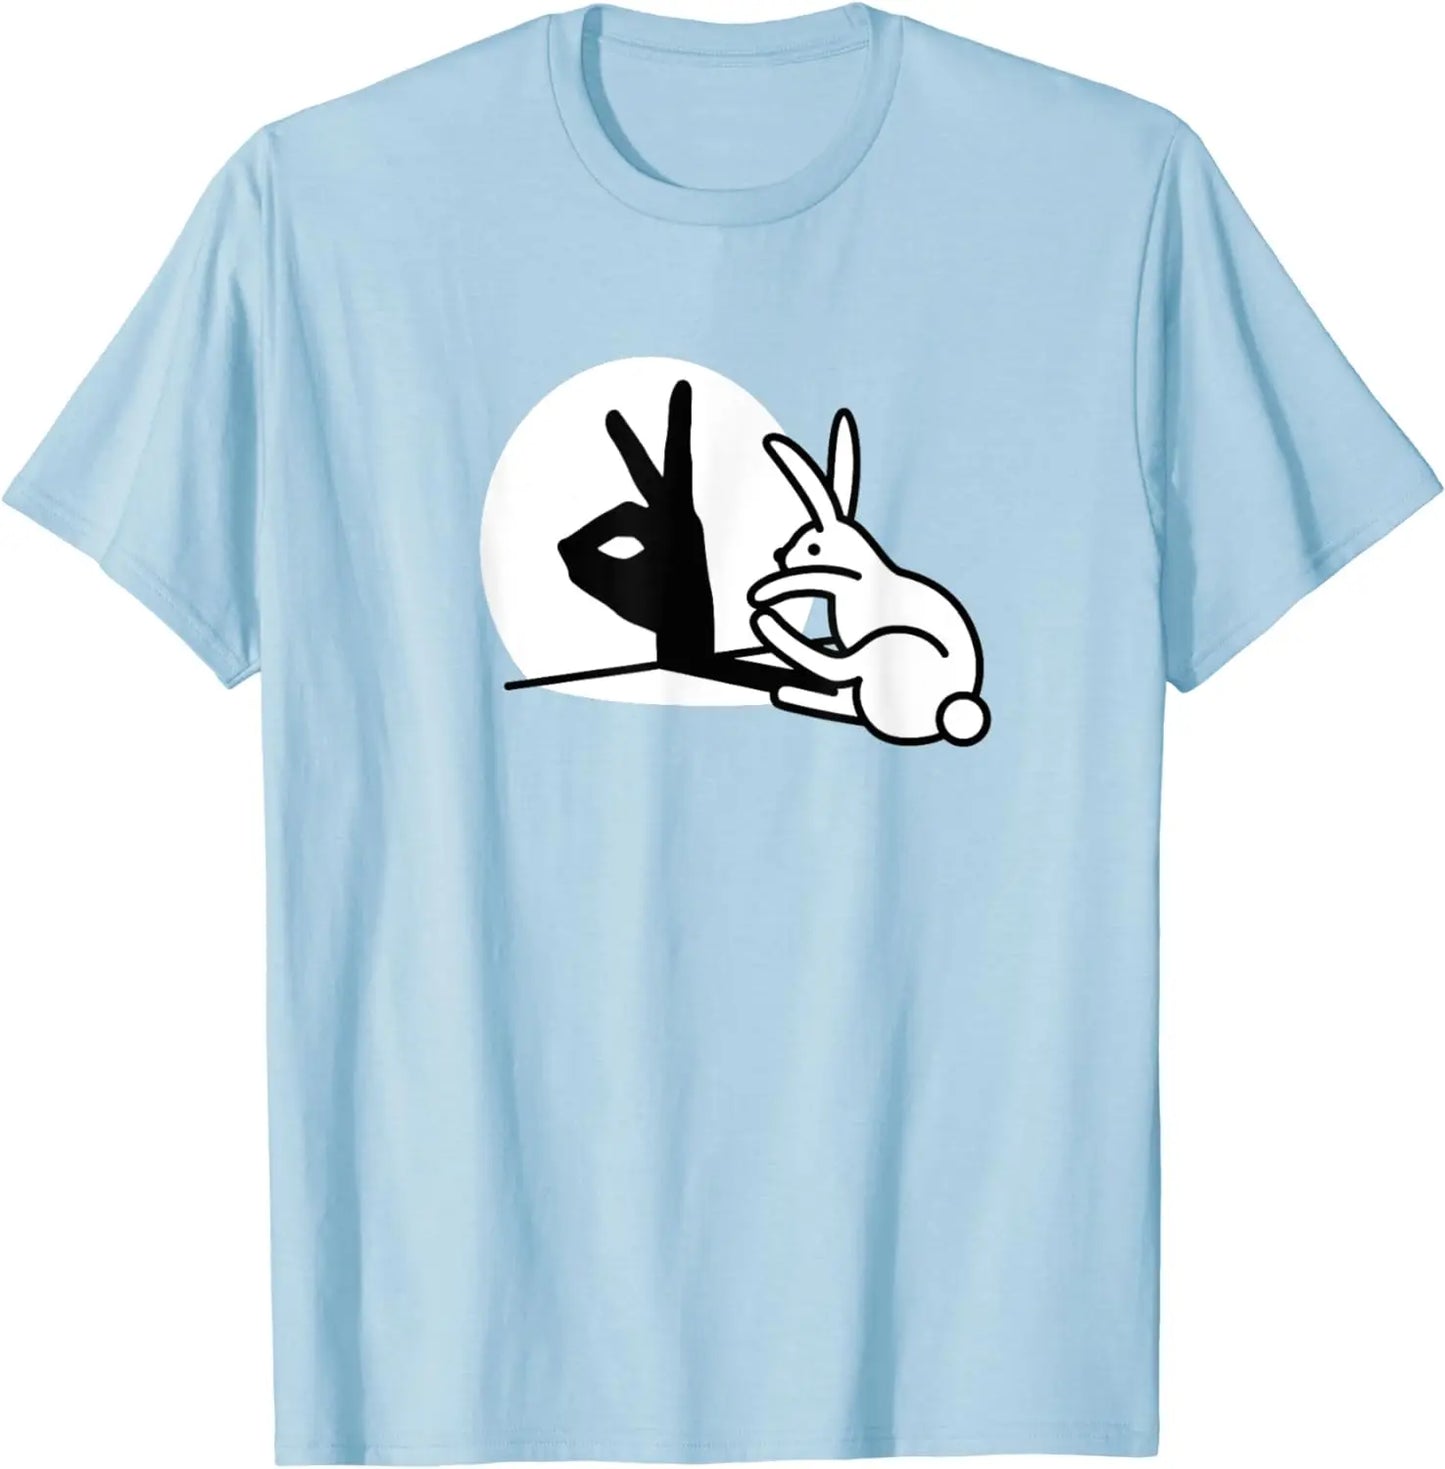 Men's Cotton Funny Gesture Print T-Shirt